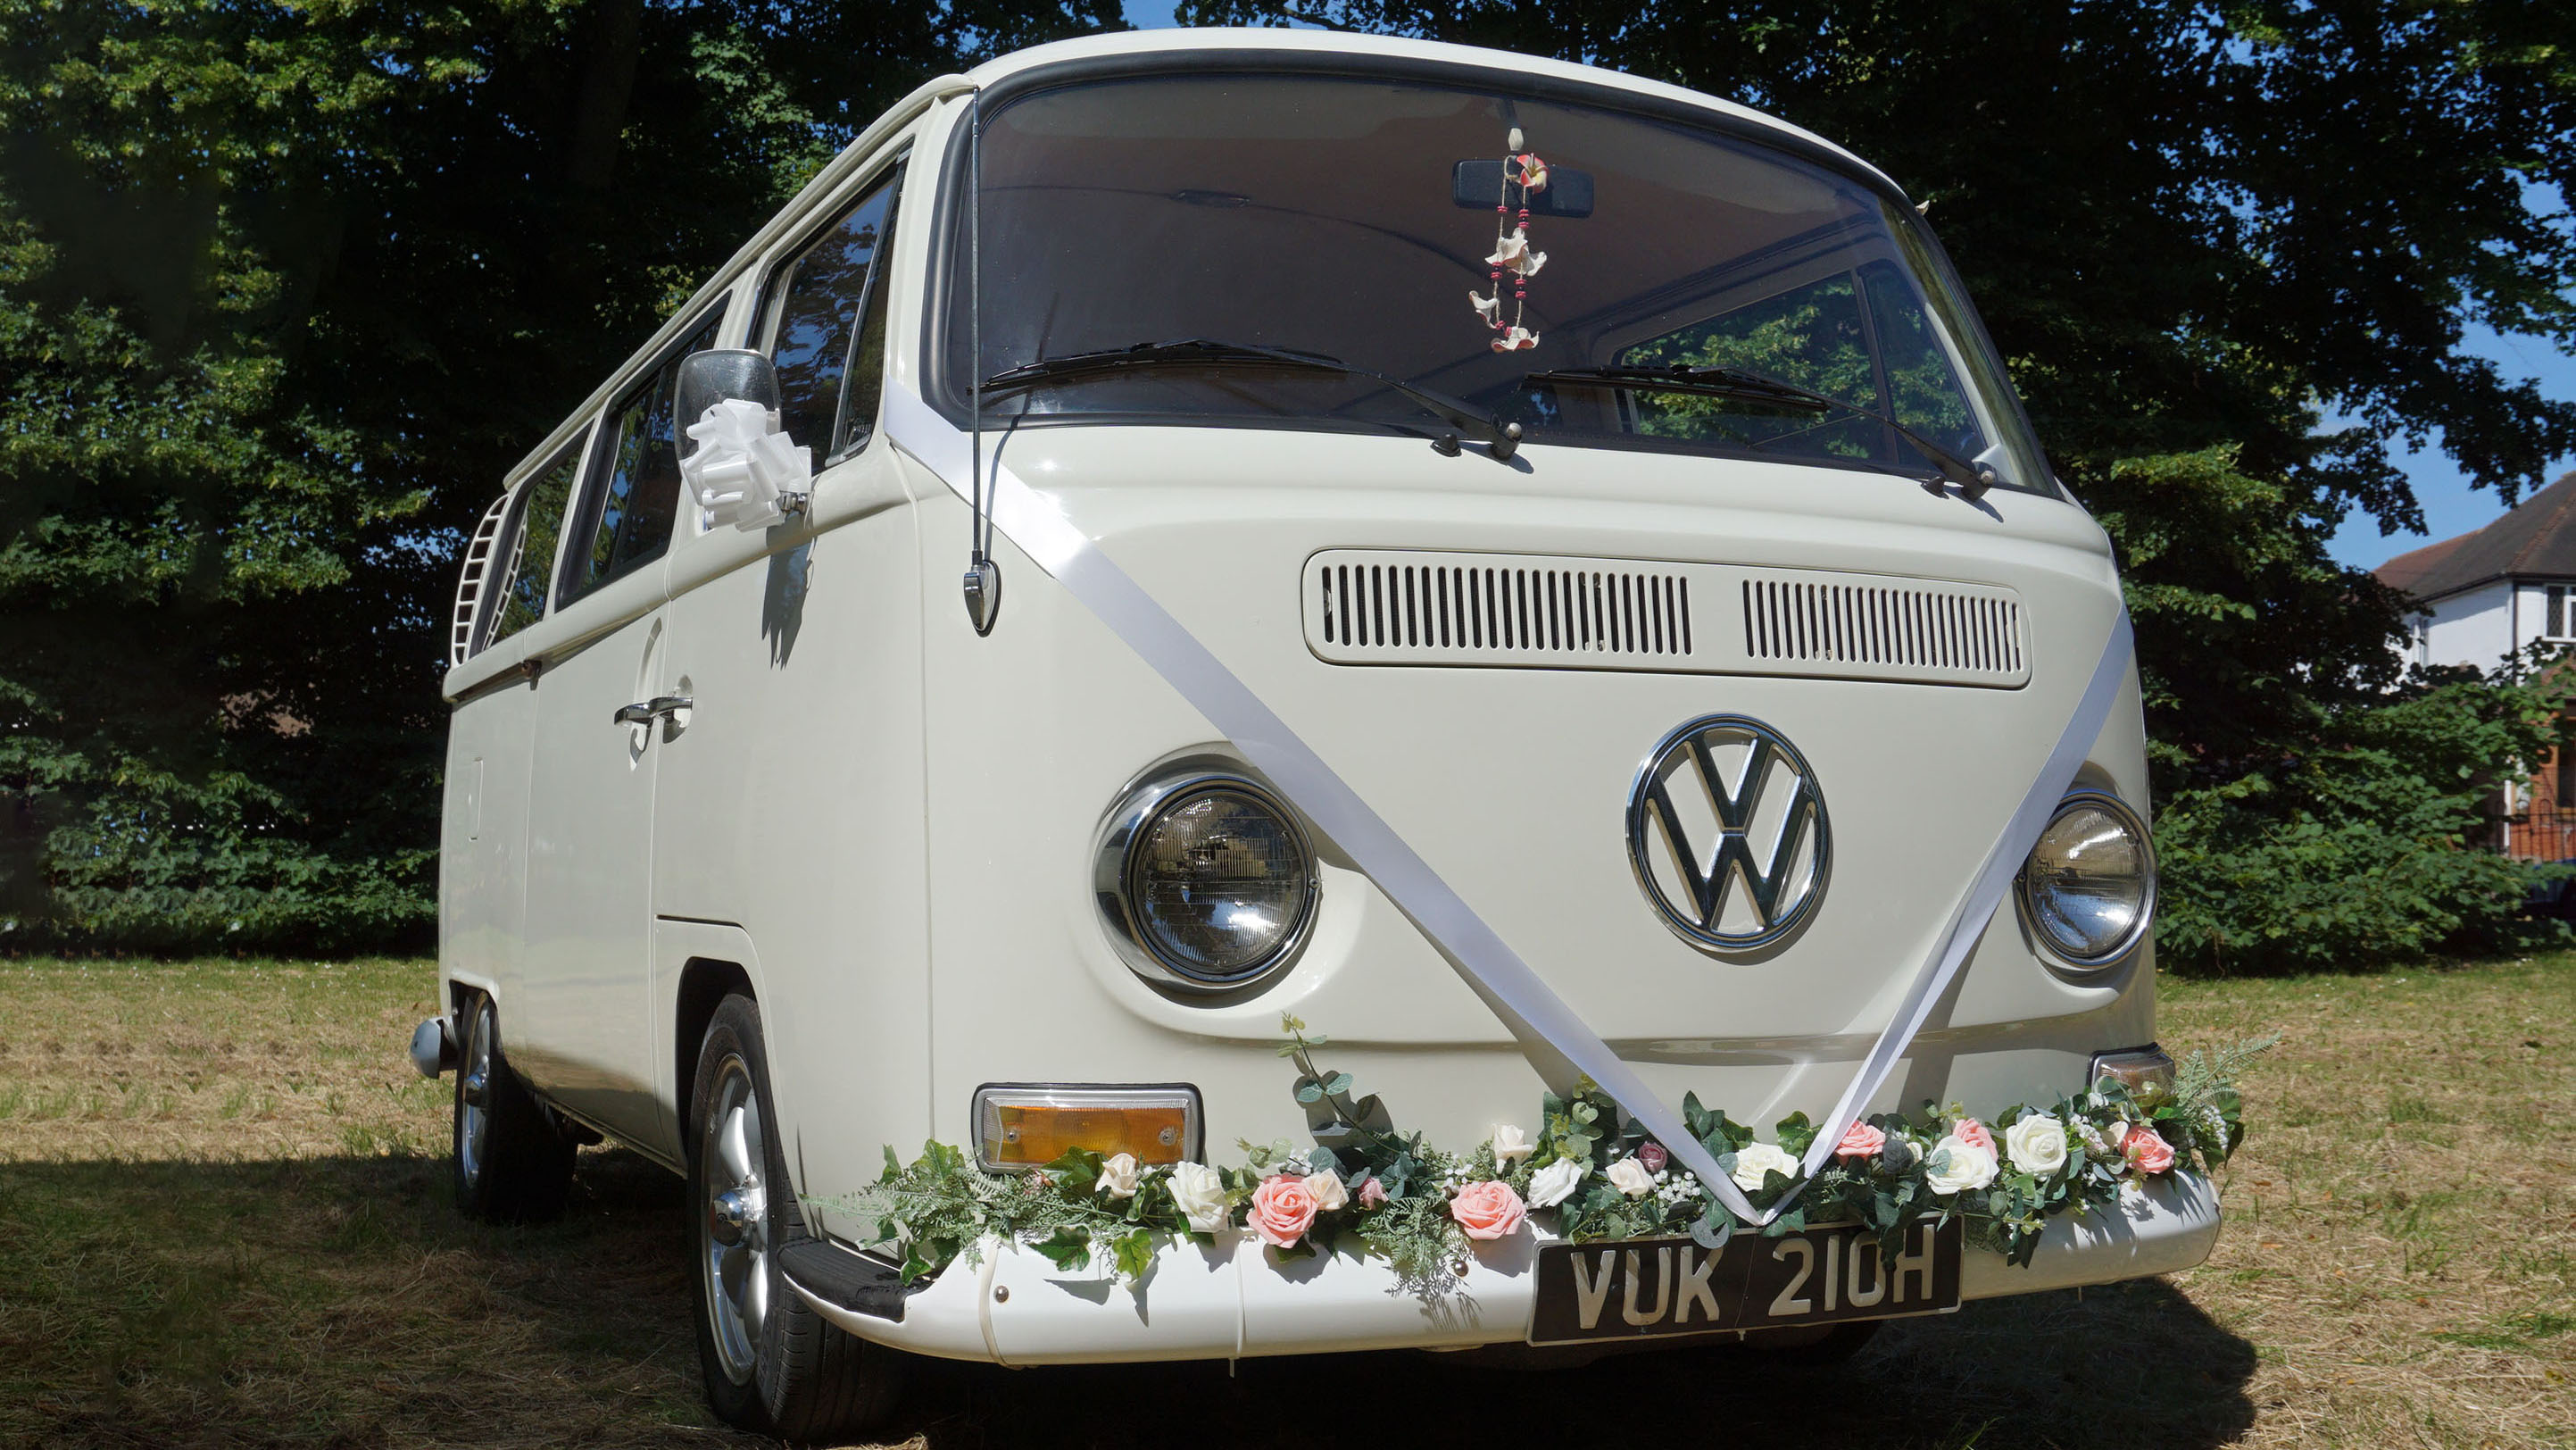 Volkswagen Bay Window Camper Van wedding car for hire in Welling, Kent